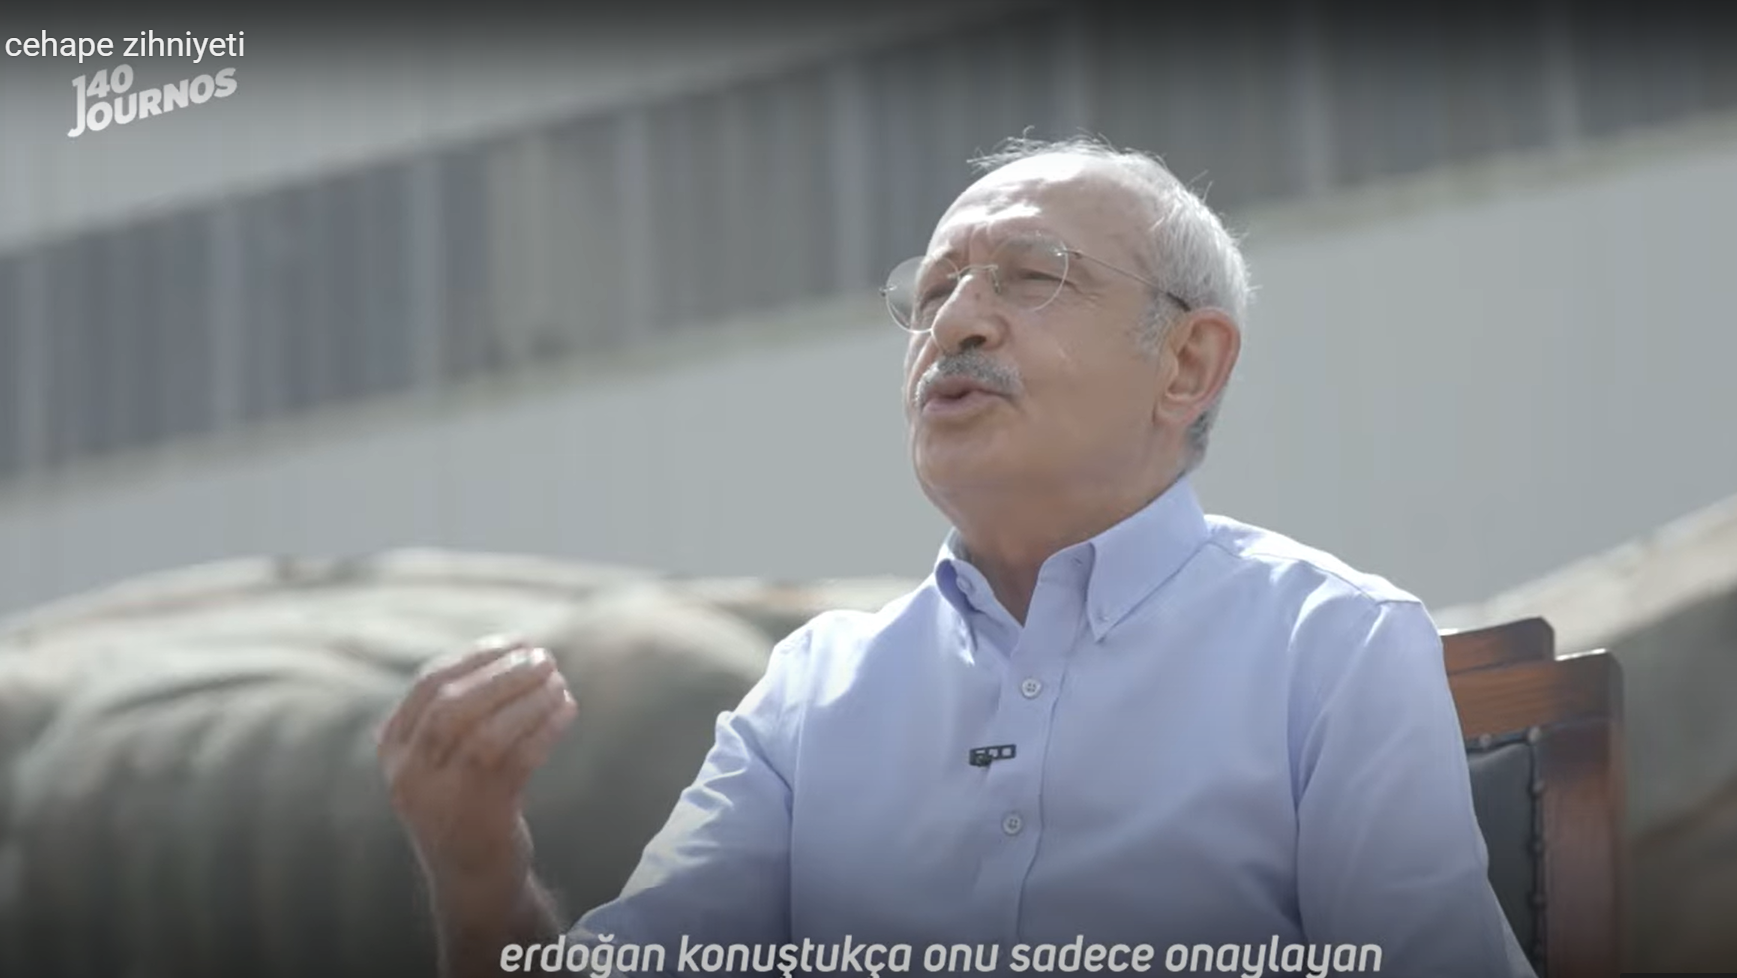 140journos'tan çok konuşulacak Kemal Kılıçdaroğlu belgeseli